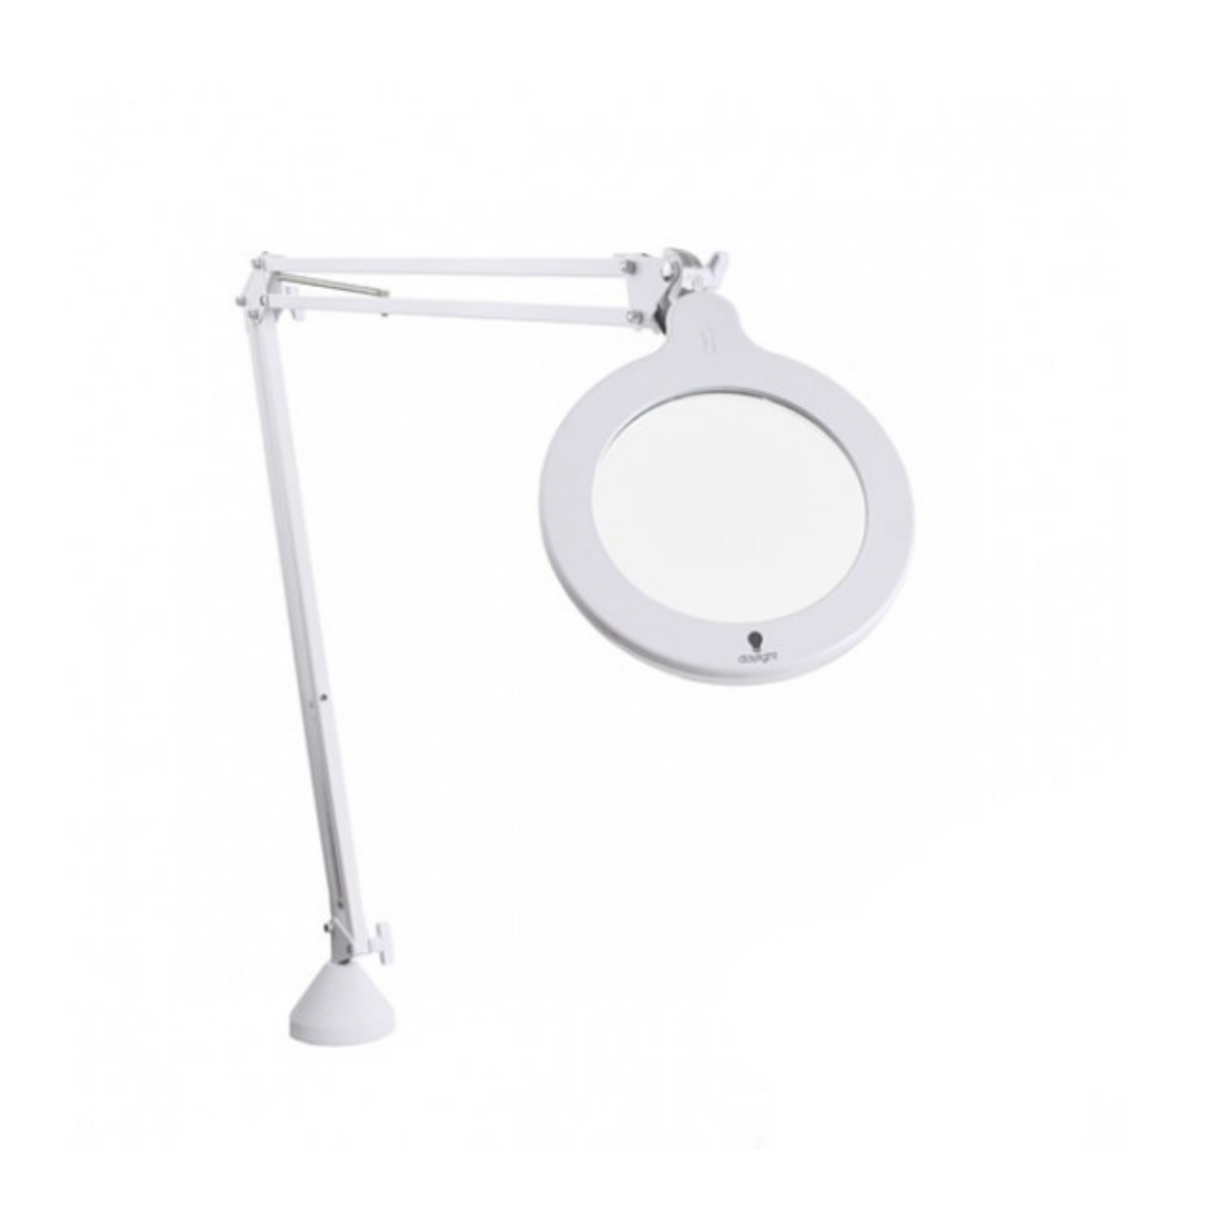 Daylight™ LED magnifying lamp S, white